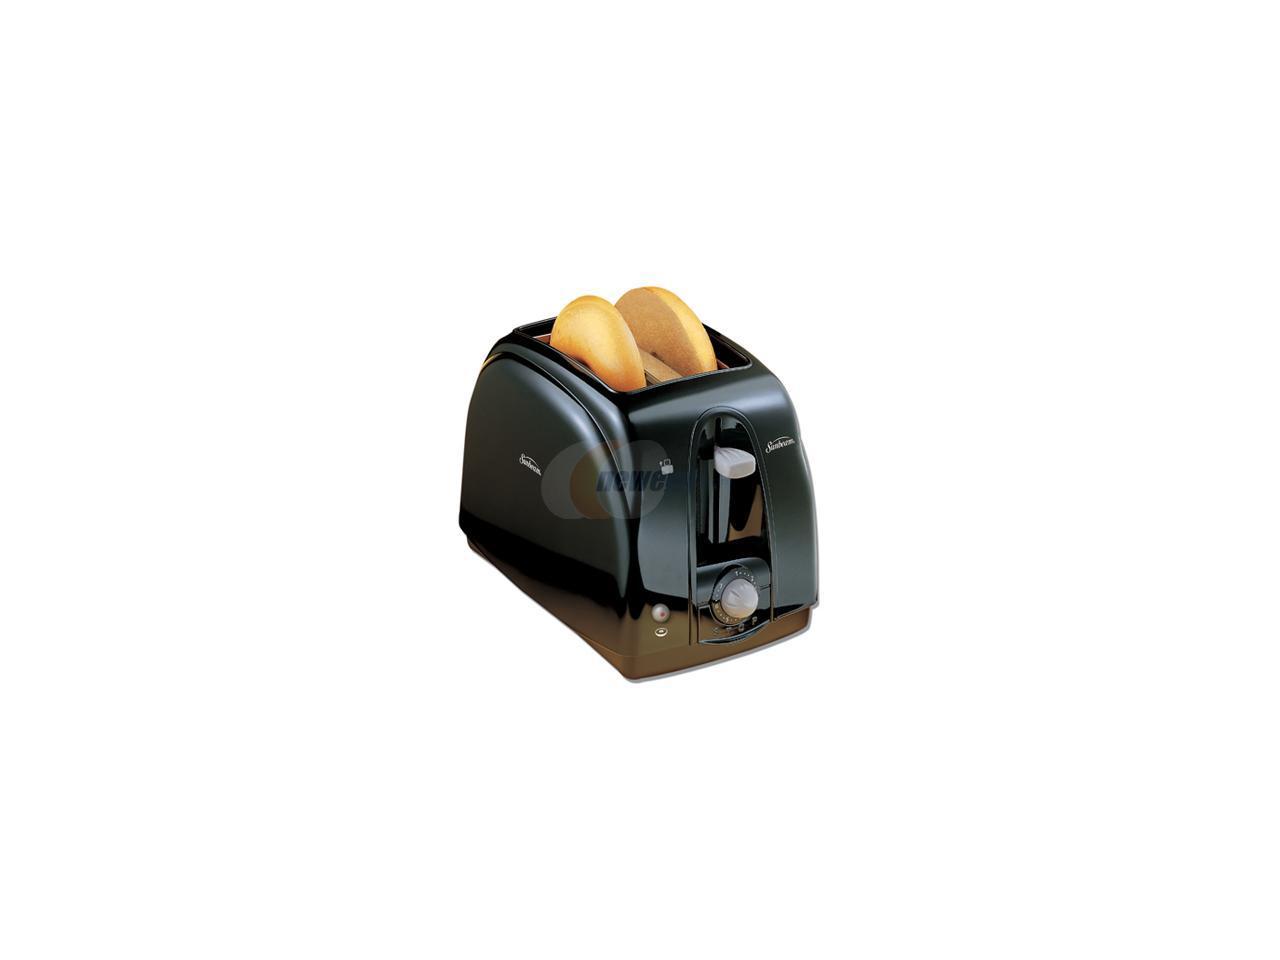 Sunbeam 3910-100 2-Slice Wide Slot Toaster Black 